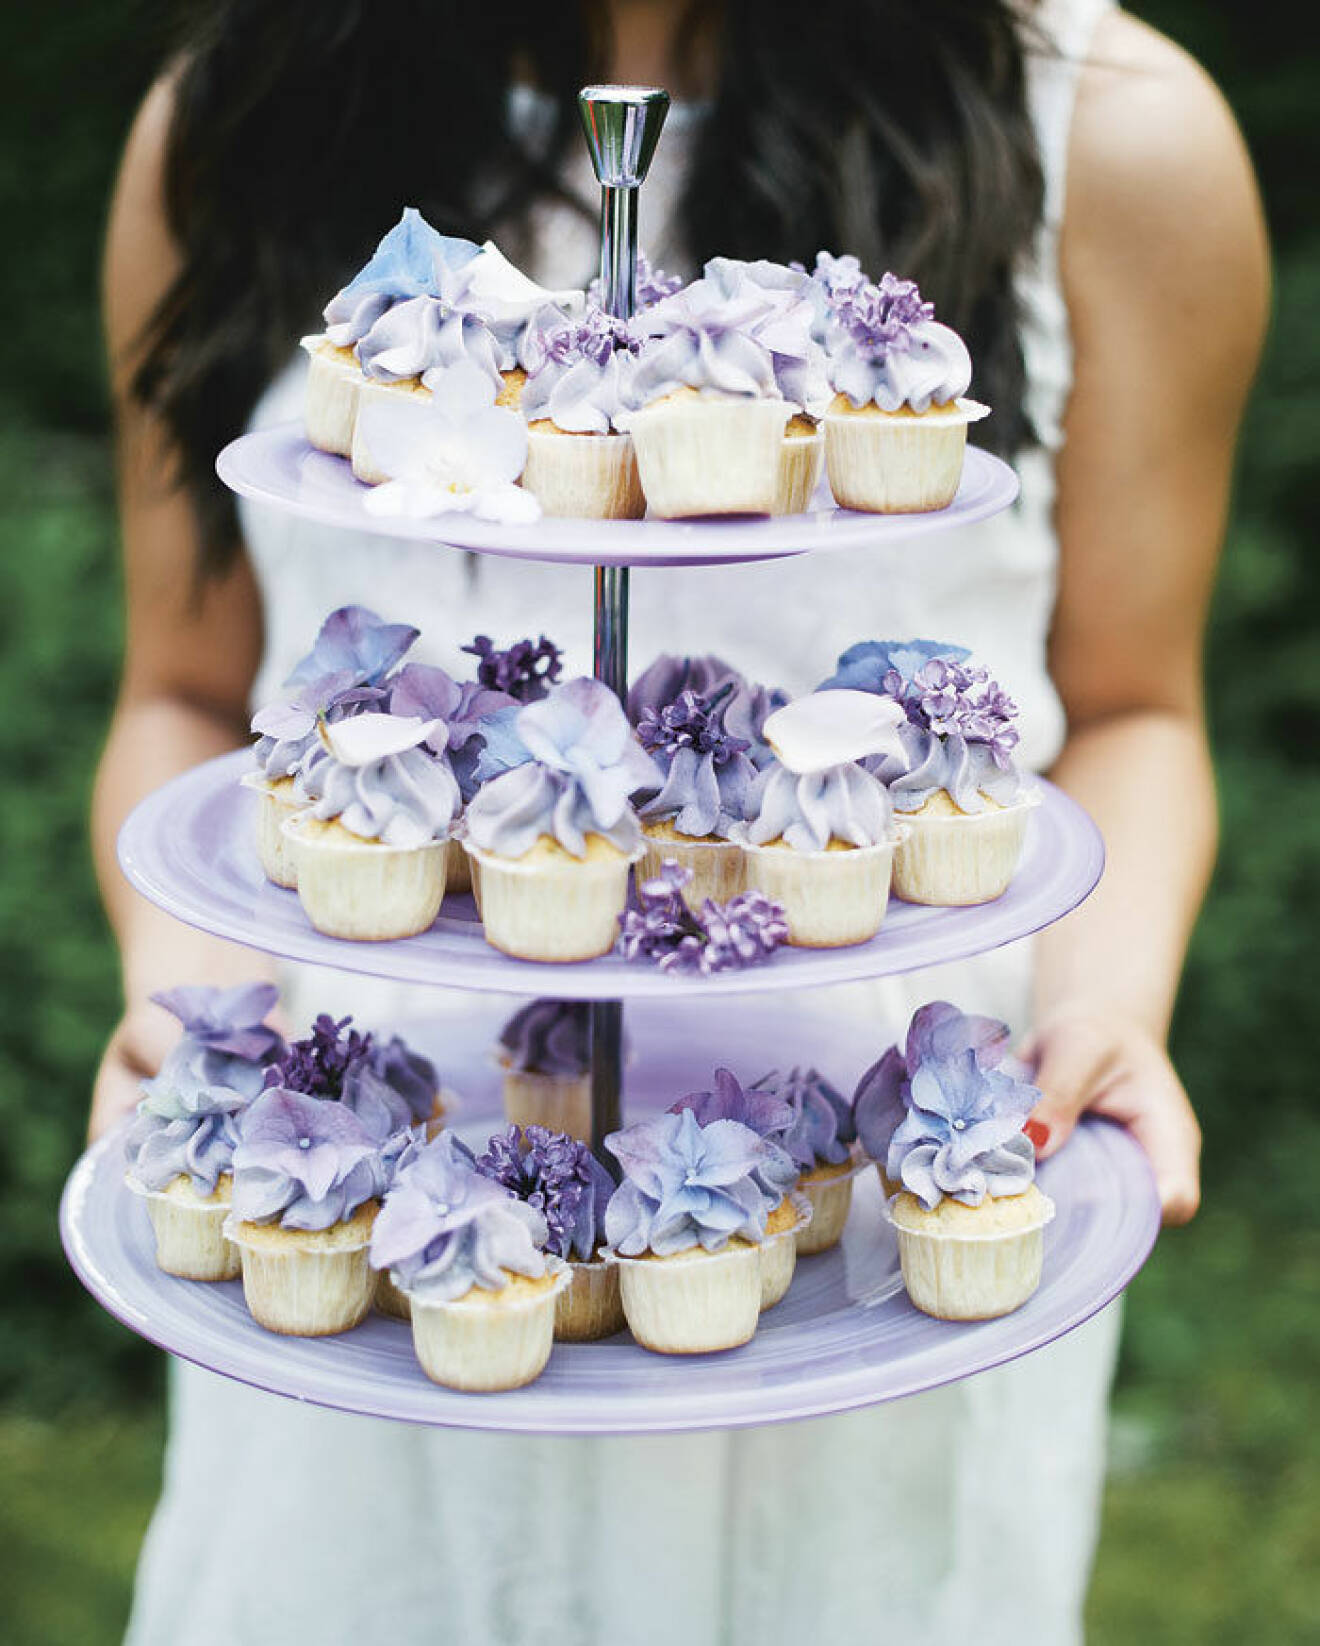 Blåbärscupcakes med blommor.